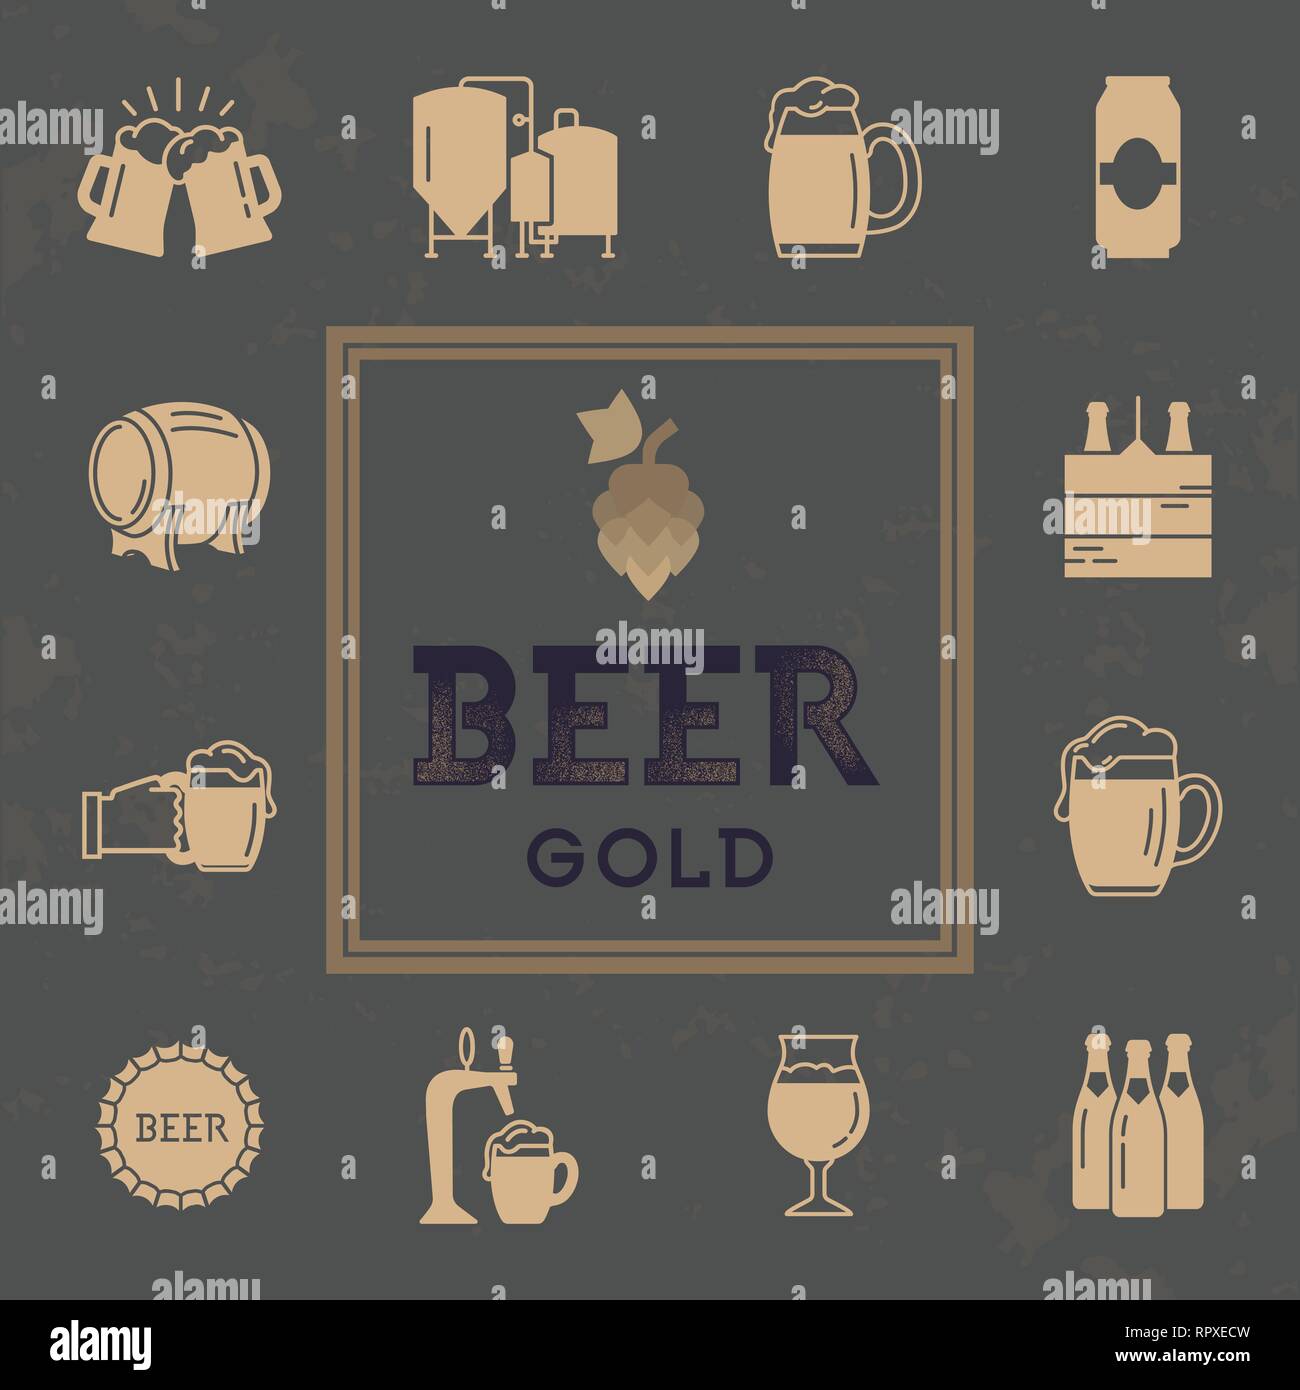 Logo für Pub, Bar, Handwerk Bier Brauerei. Einstellen des Bierbrauens Symbole im Retro Style. Vektor Icon auf das Thema Bier und Bierbrauen eingestellt. Stock Vektor